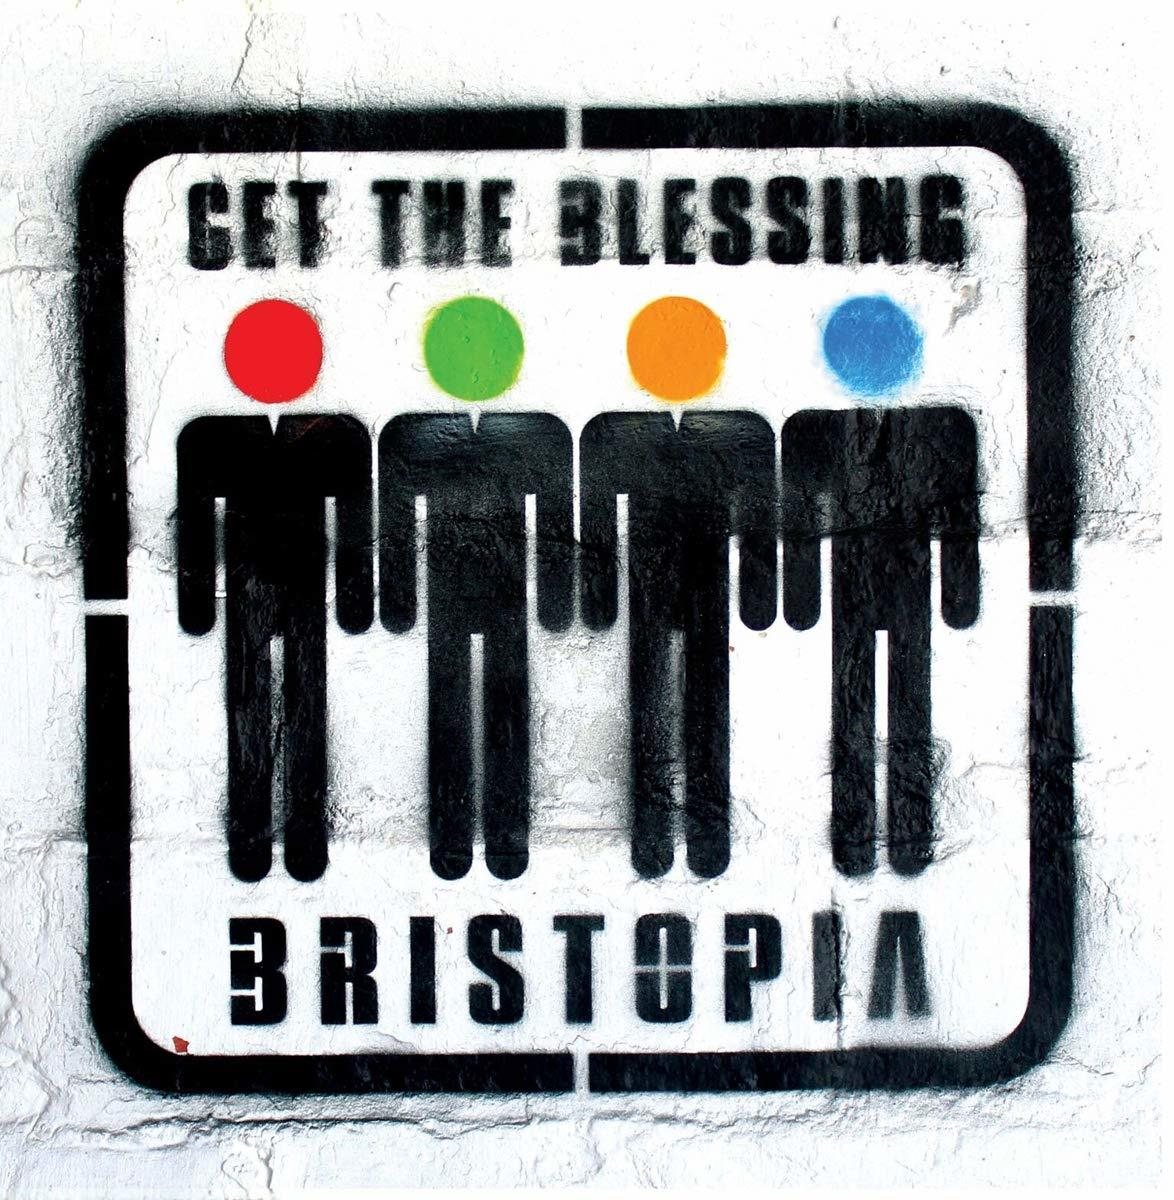 The Bristopia (Vinyl) (Orange Blessing - Get Edition) -